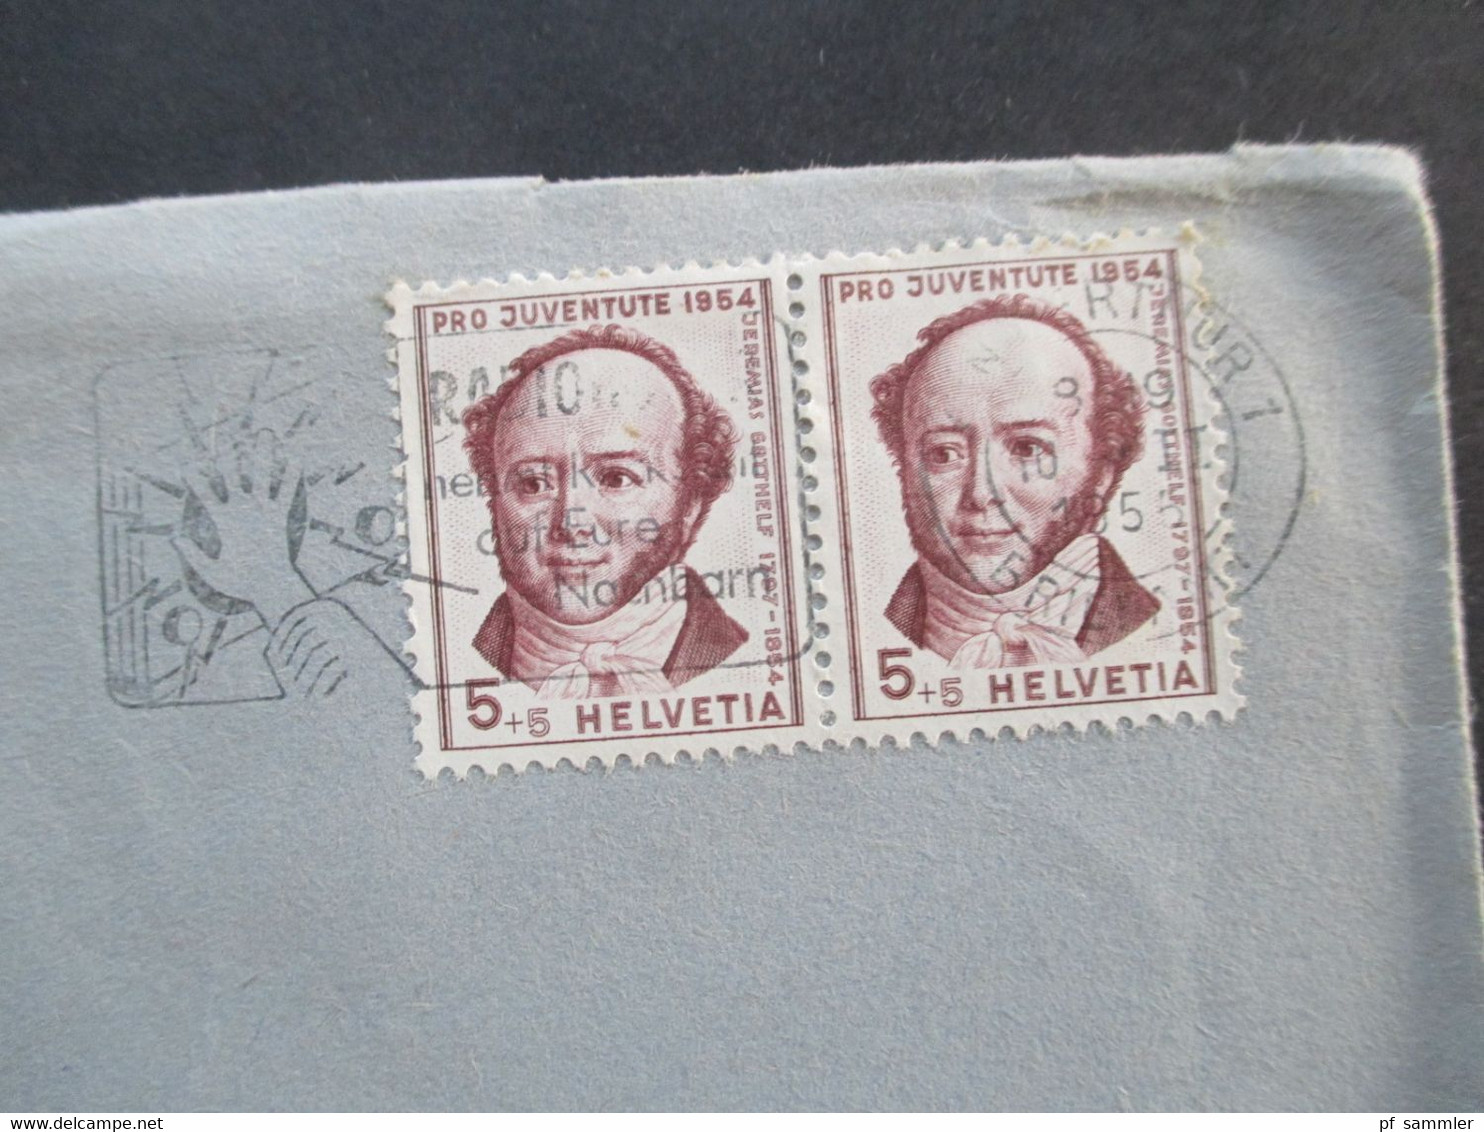 Schweiz 1955 Pro Juventute Nr. 602 MeF Waagerechtes Paar Umschlag Ed. Bühler & Co Winterthur Ortsbrief - Cartas & Documentos